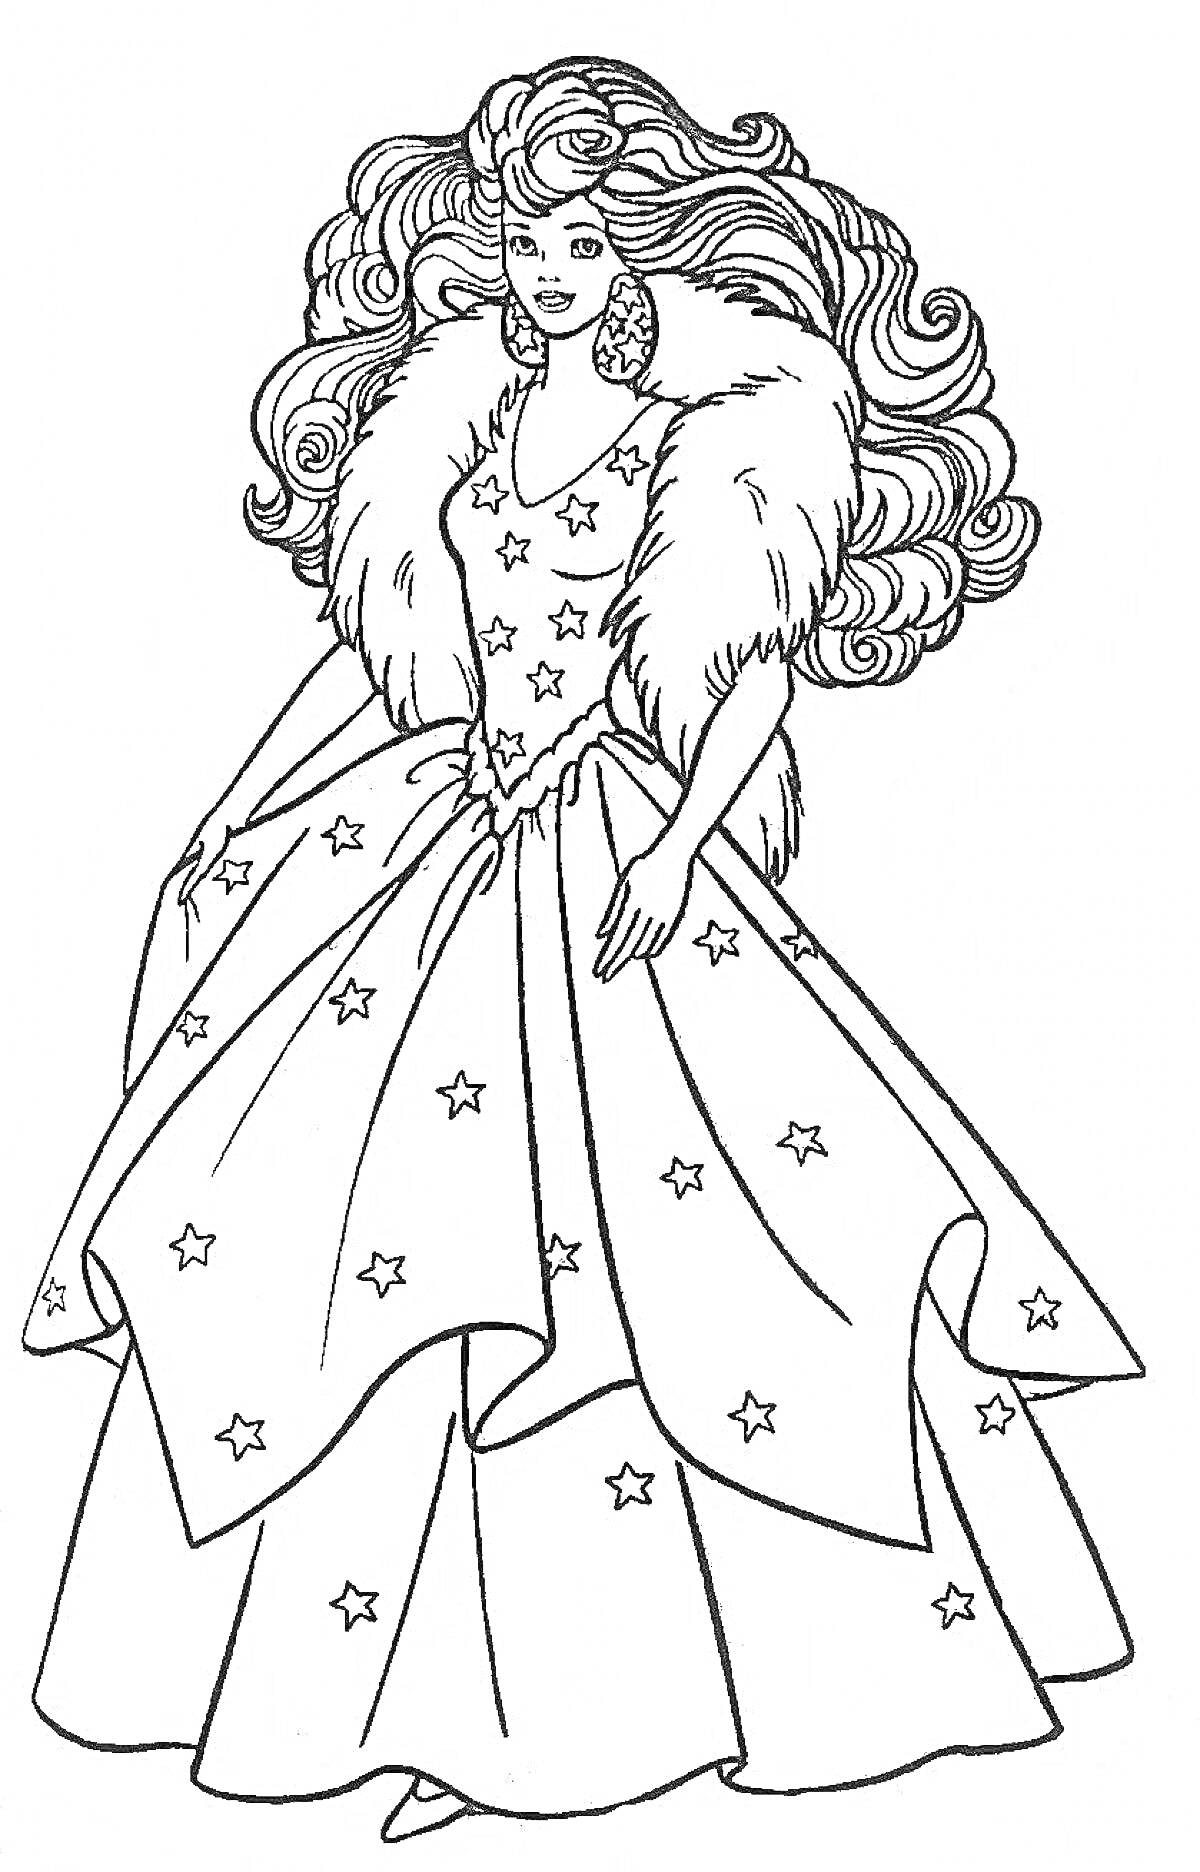 Раскраска Барби в вечернем платье с меховым воротником и звездами